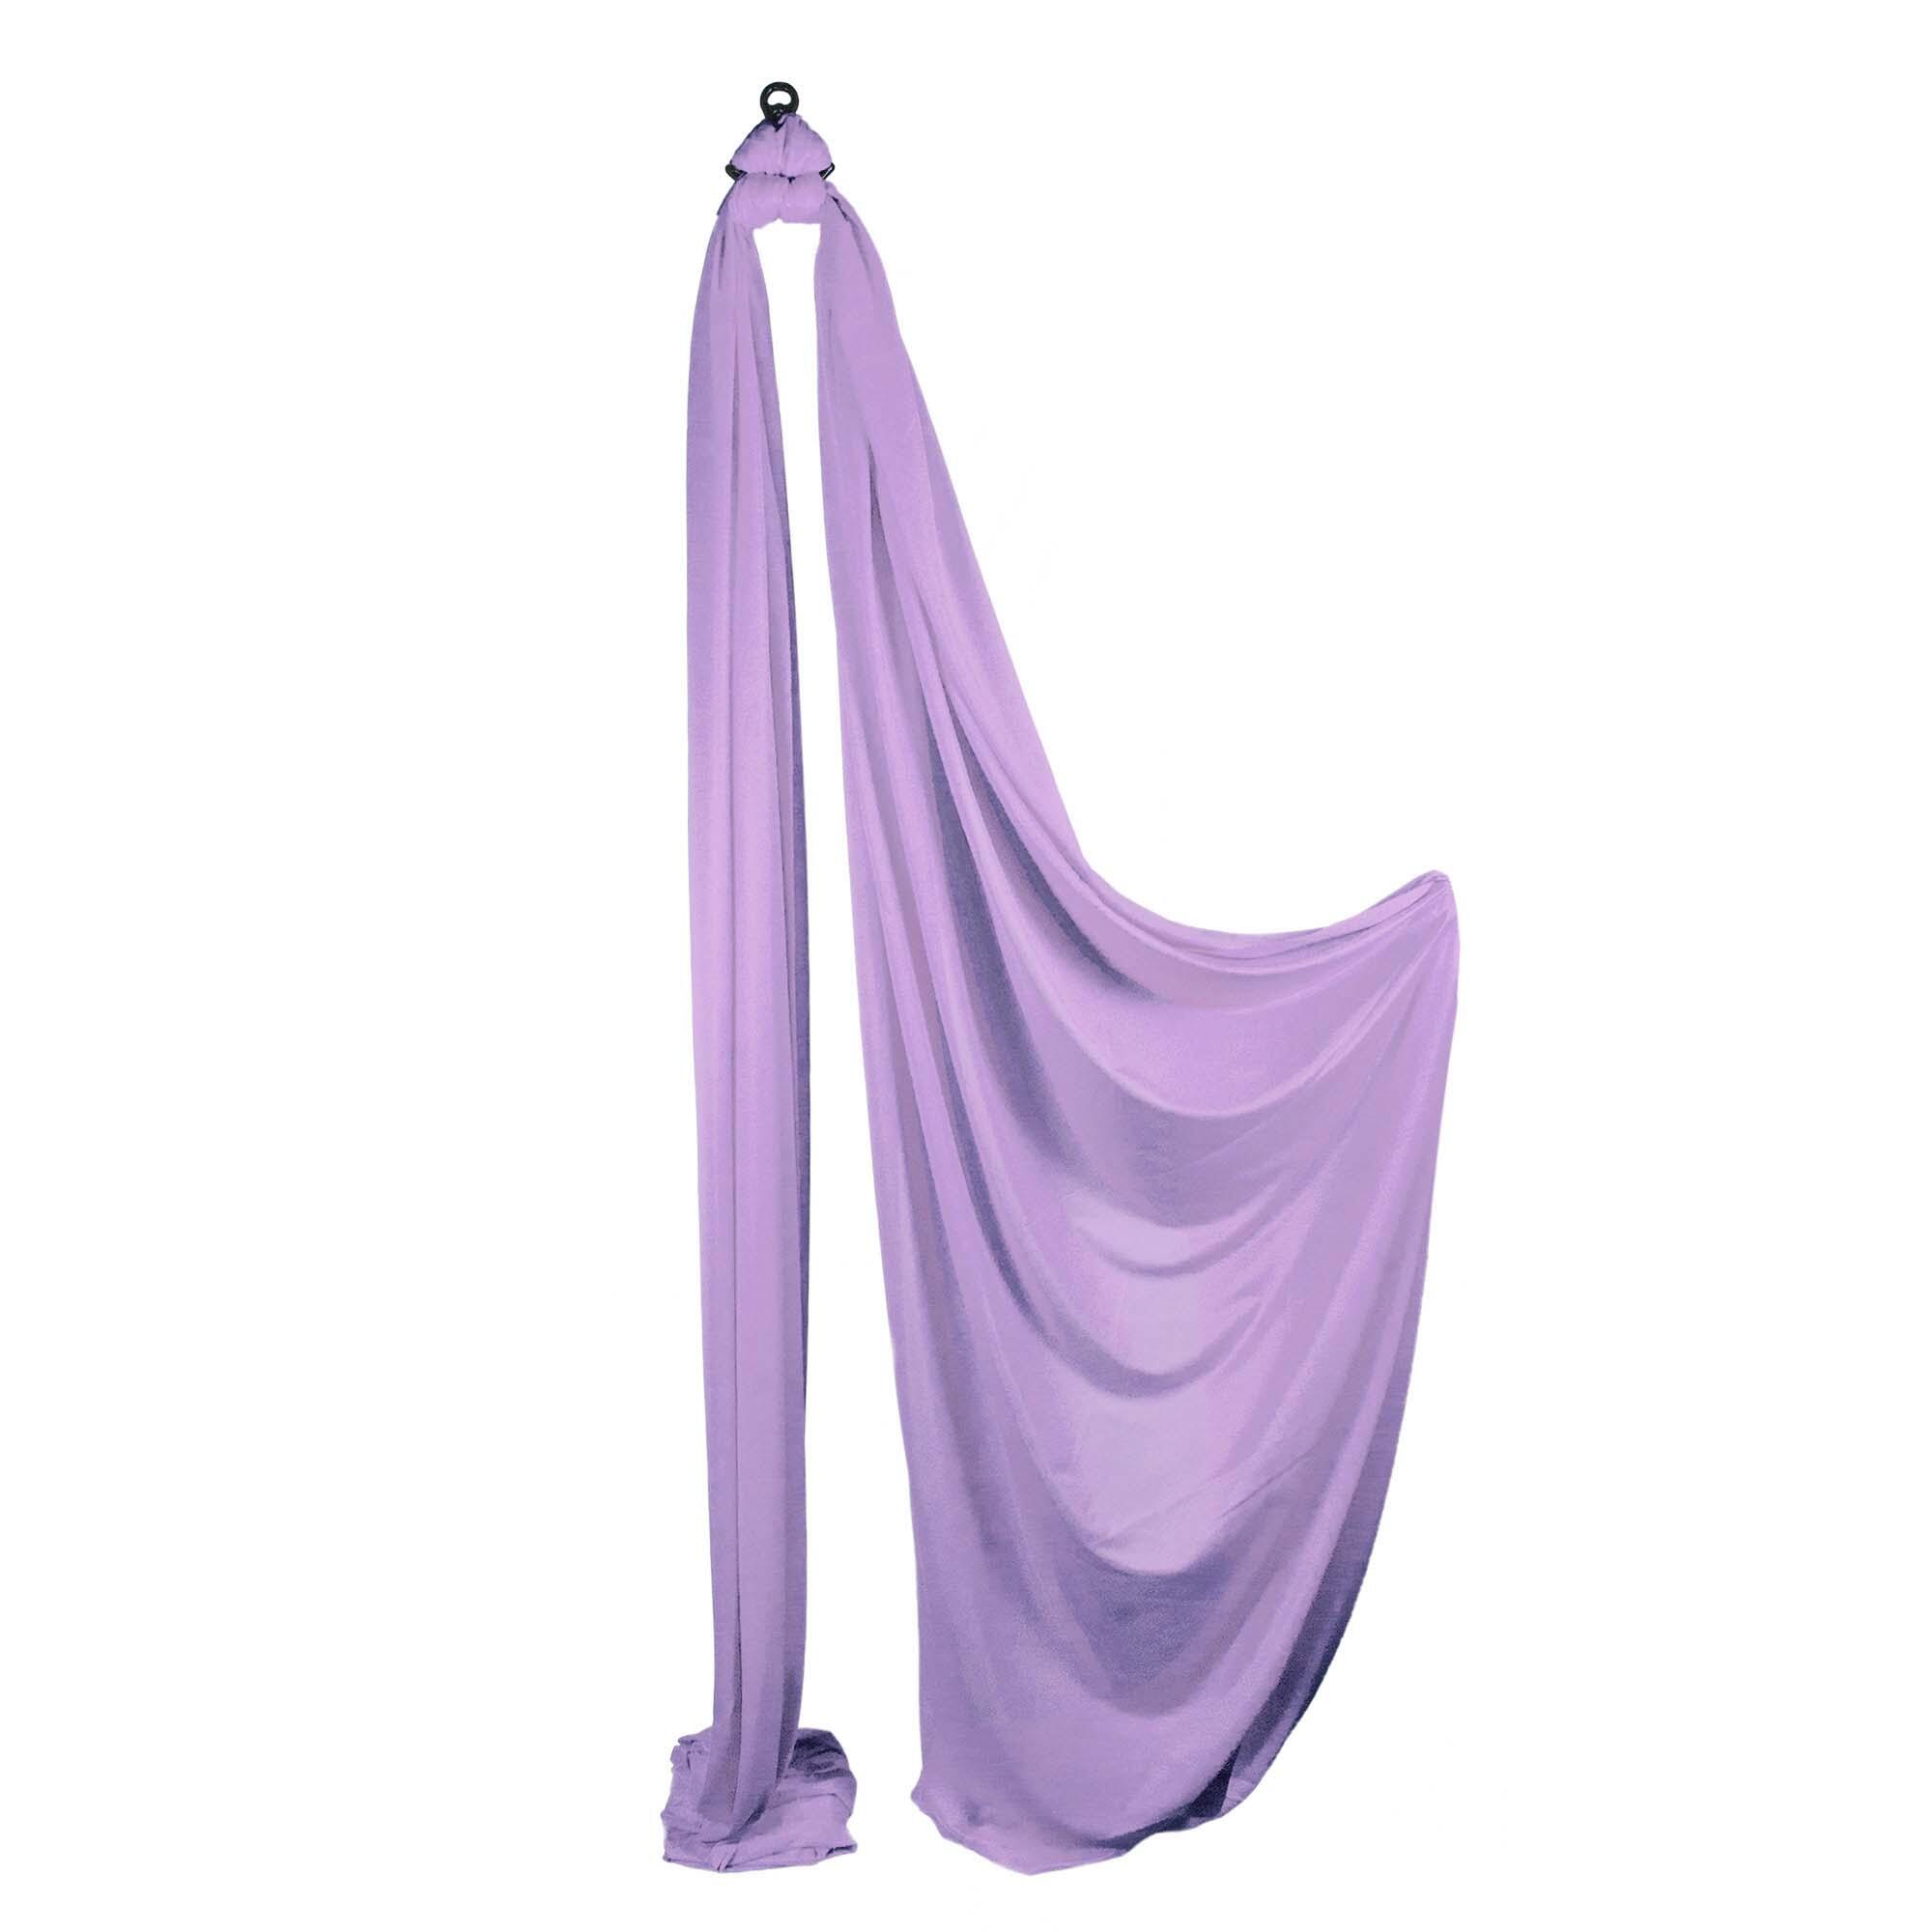 Firetoys Aerial Silk (Aerial Fabric / Tissus) - Lavender 2/5